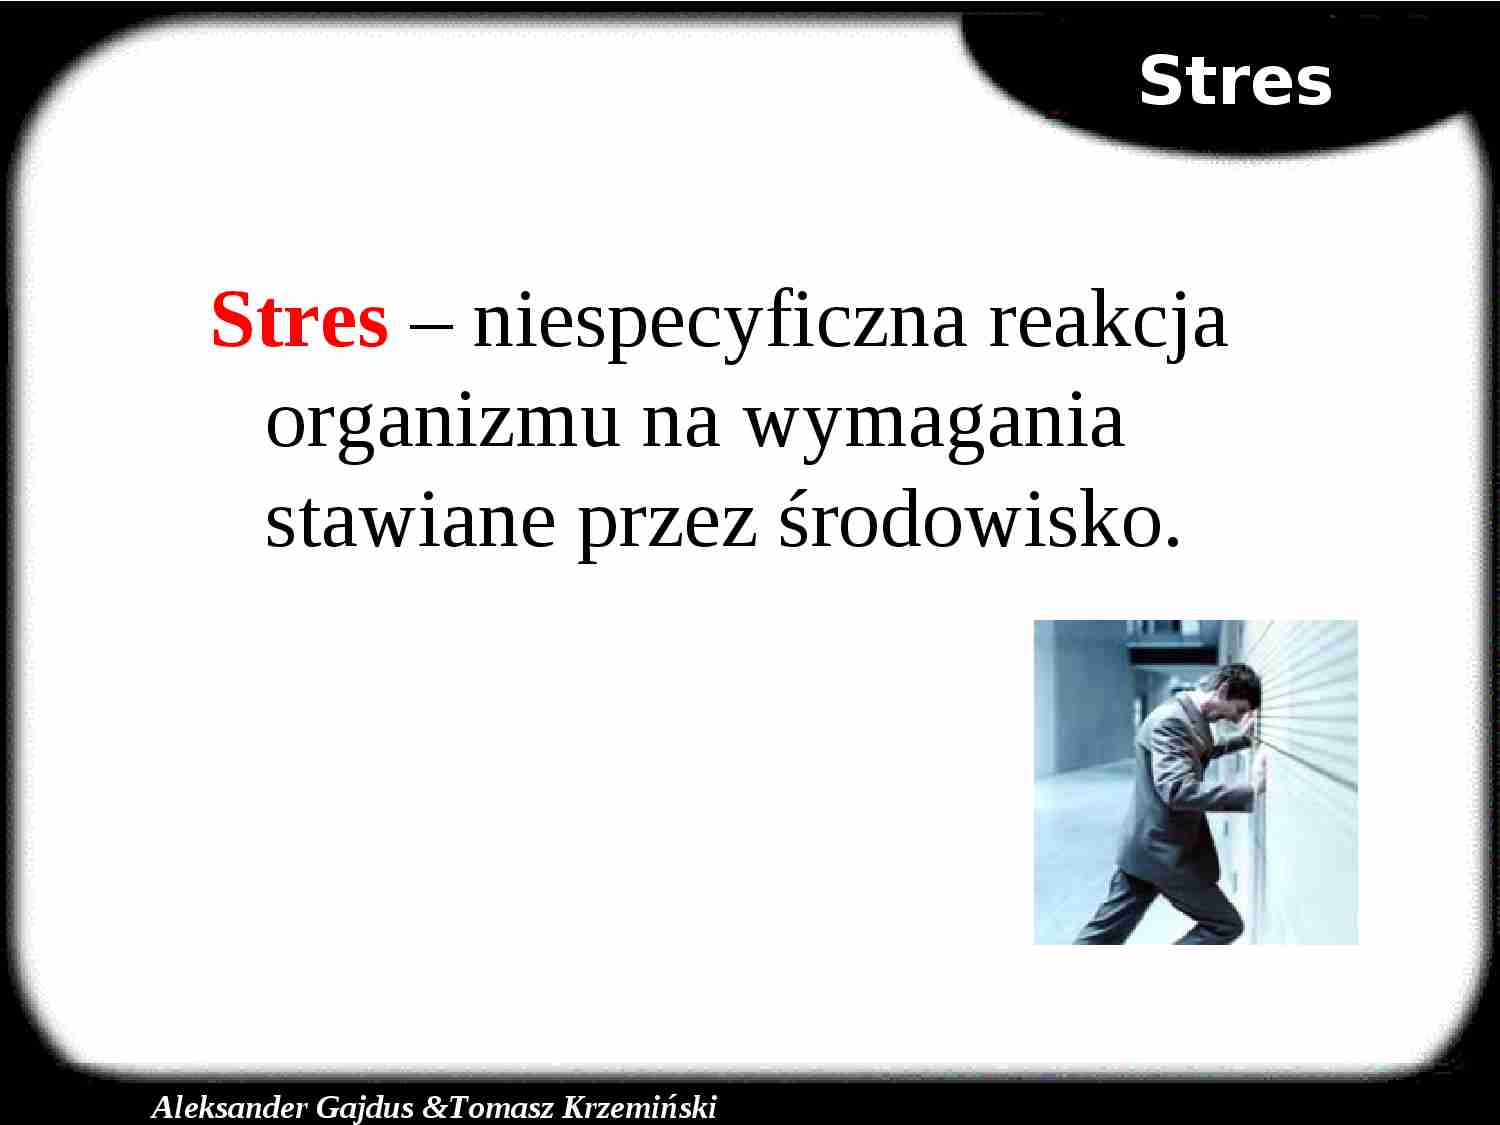 Stres – niespecyficzna reakcja organizmu na wymagania stawiane przez środowisko - strona 1